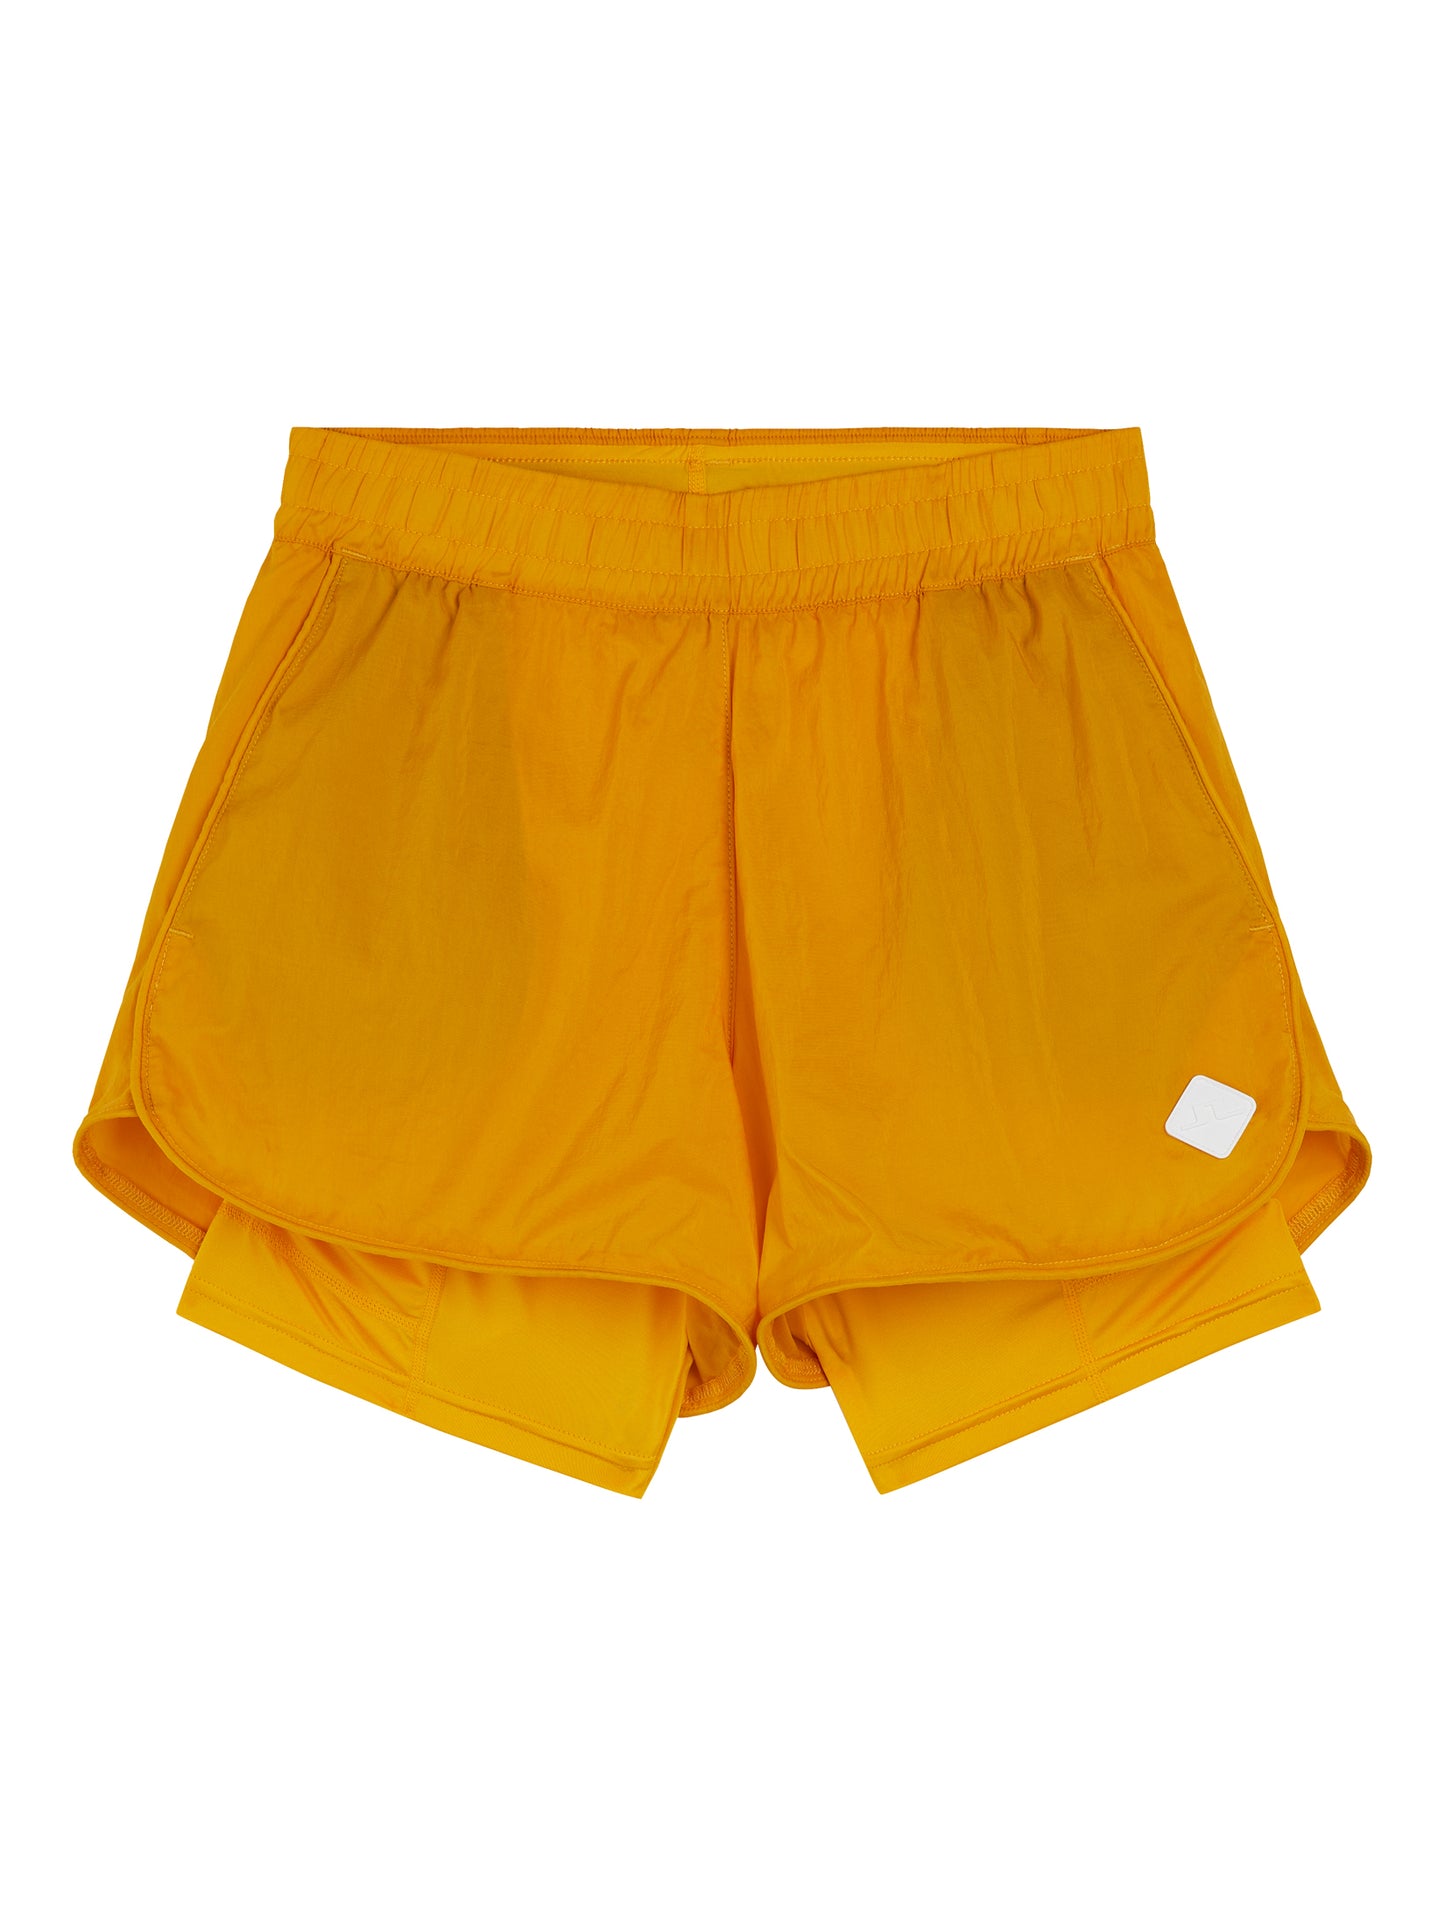 Fran Shorts / Citrus